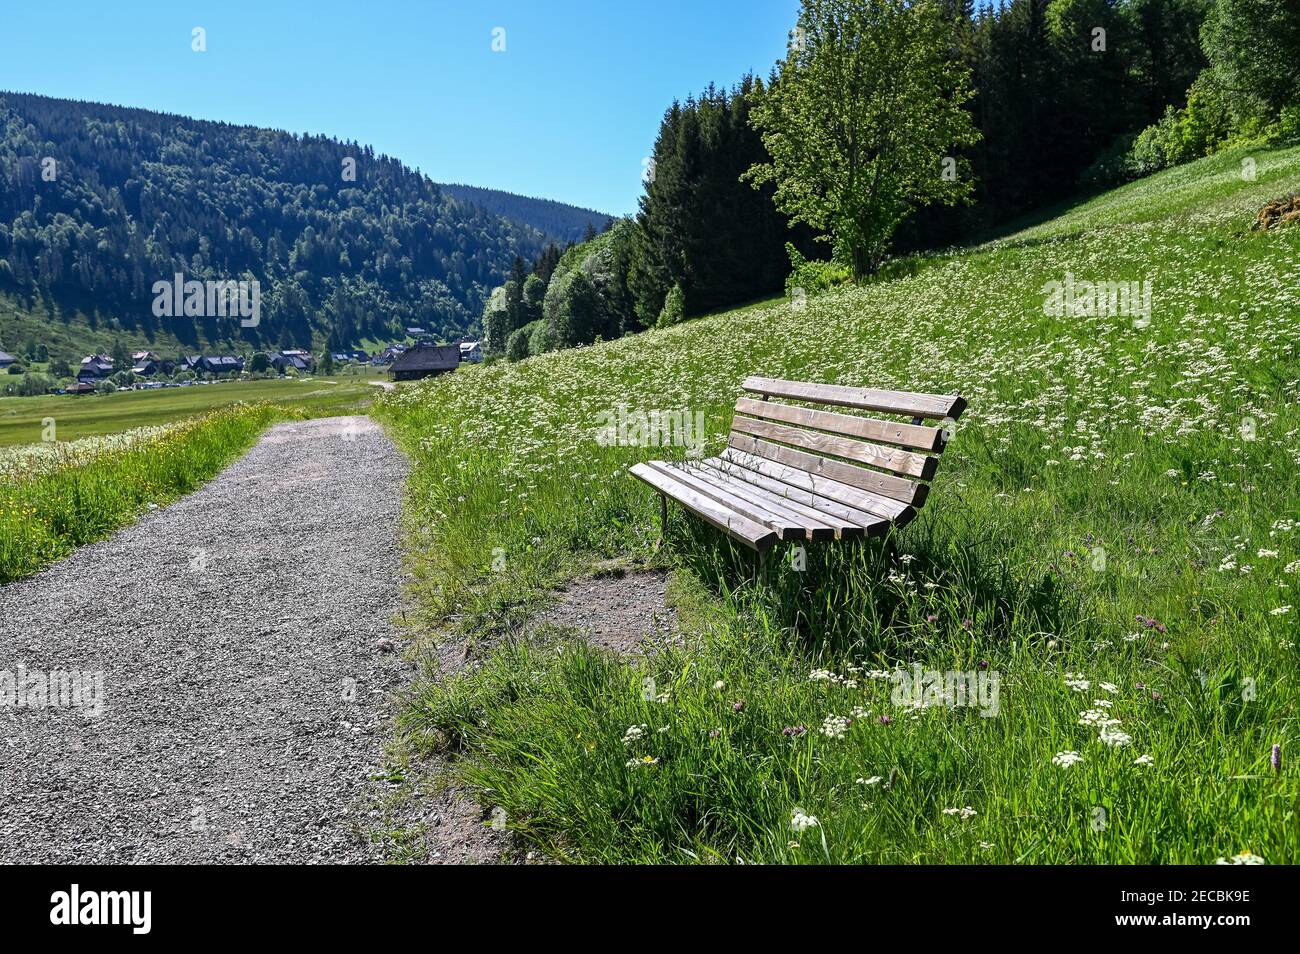 Un banc en bois à côté d'un chemin à travers une vallée Dans la Forêt-Noire, un jour ensoleillé avec du blanc fleurs Banque D'Images